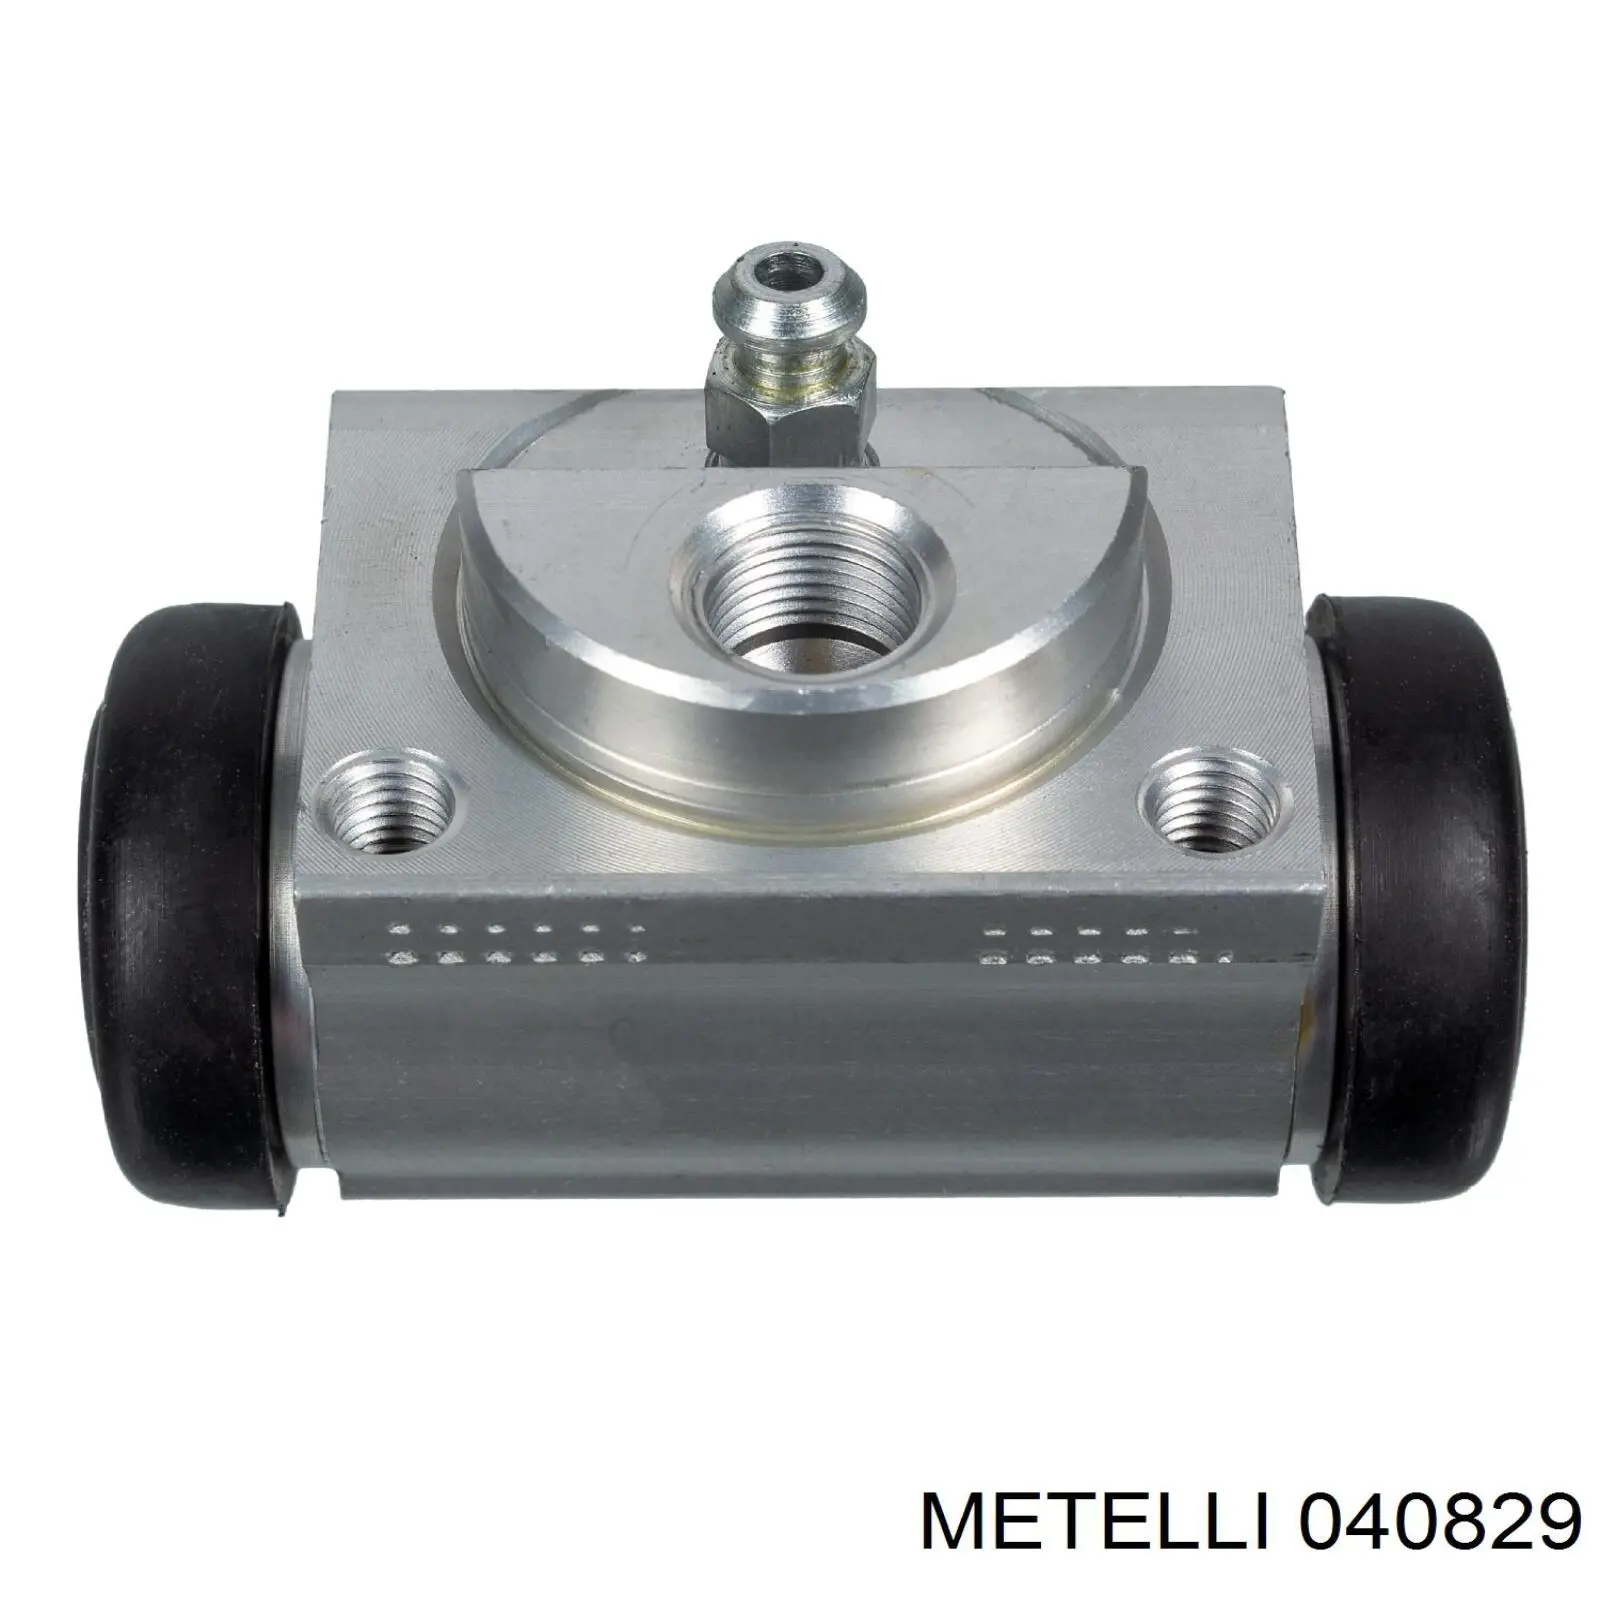 04-0829 Metelli цилиндр тормозной колесный рабочий задний